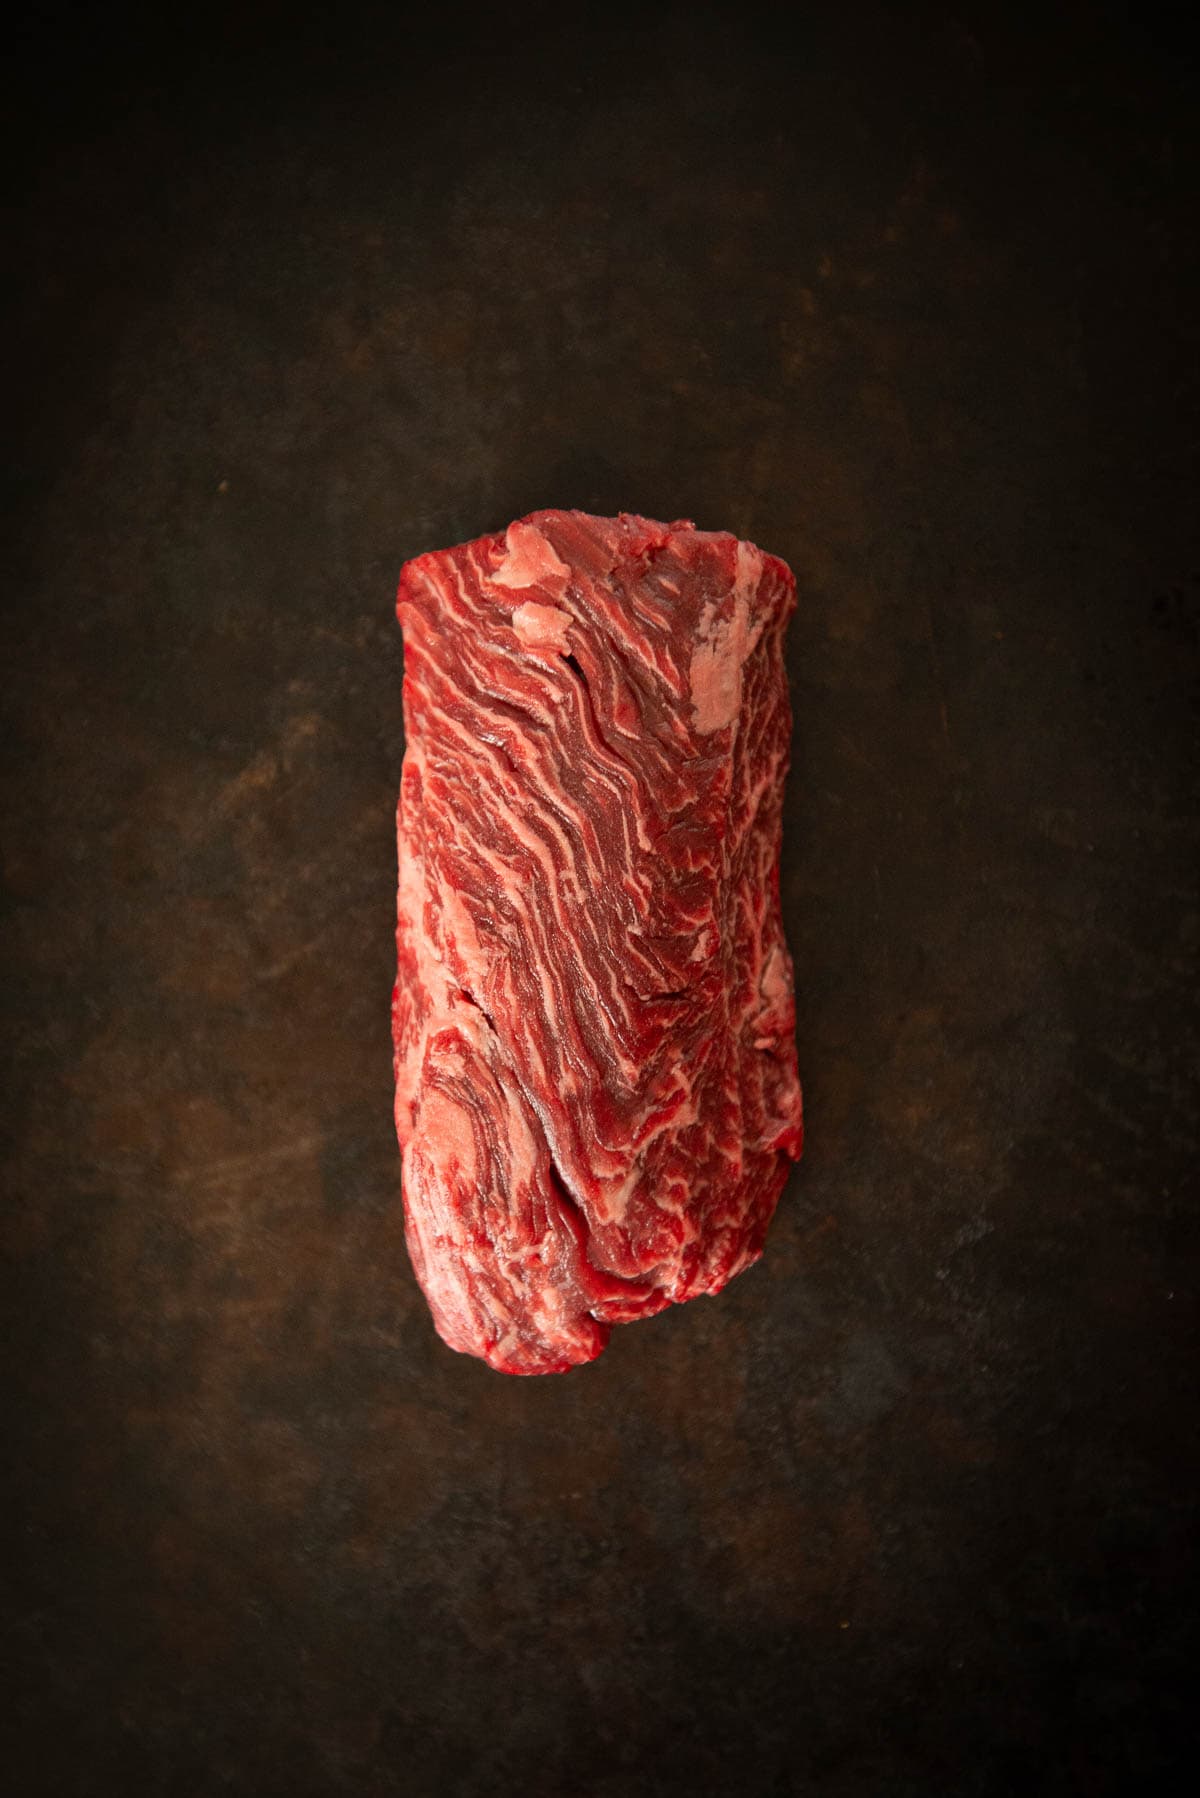 A piece of hanger steak on a dark background.